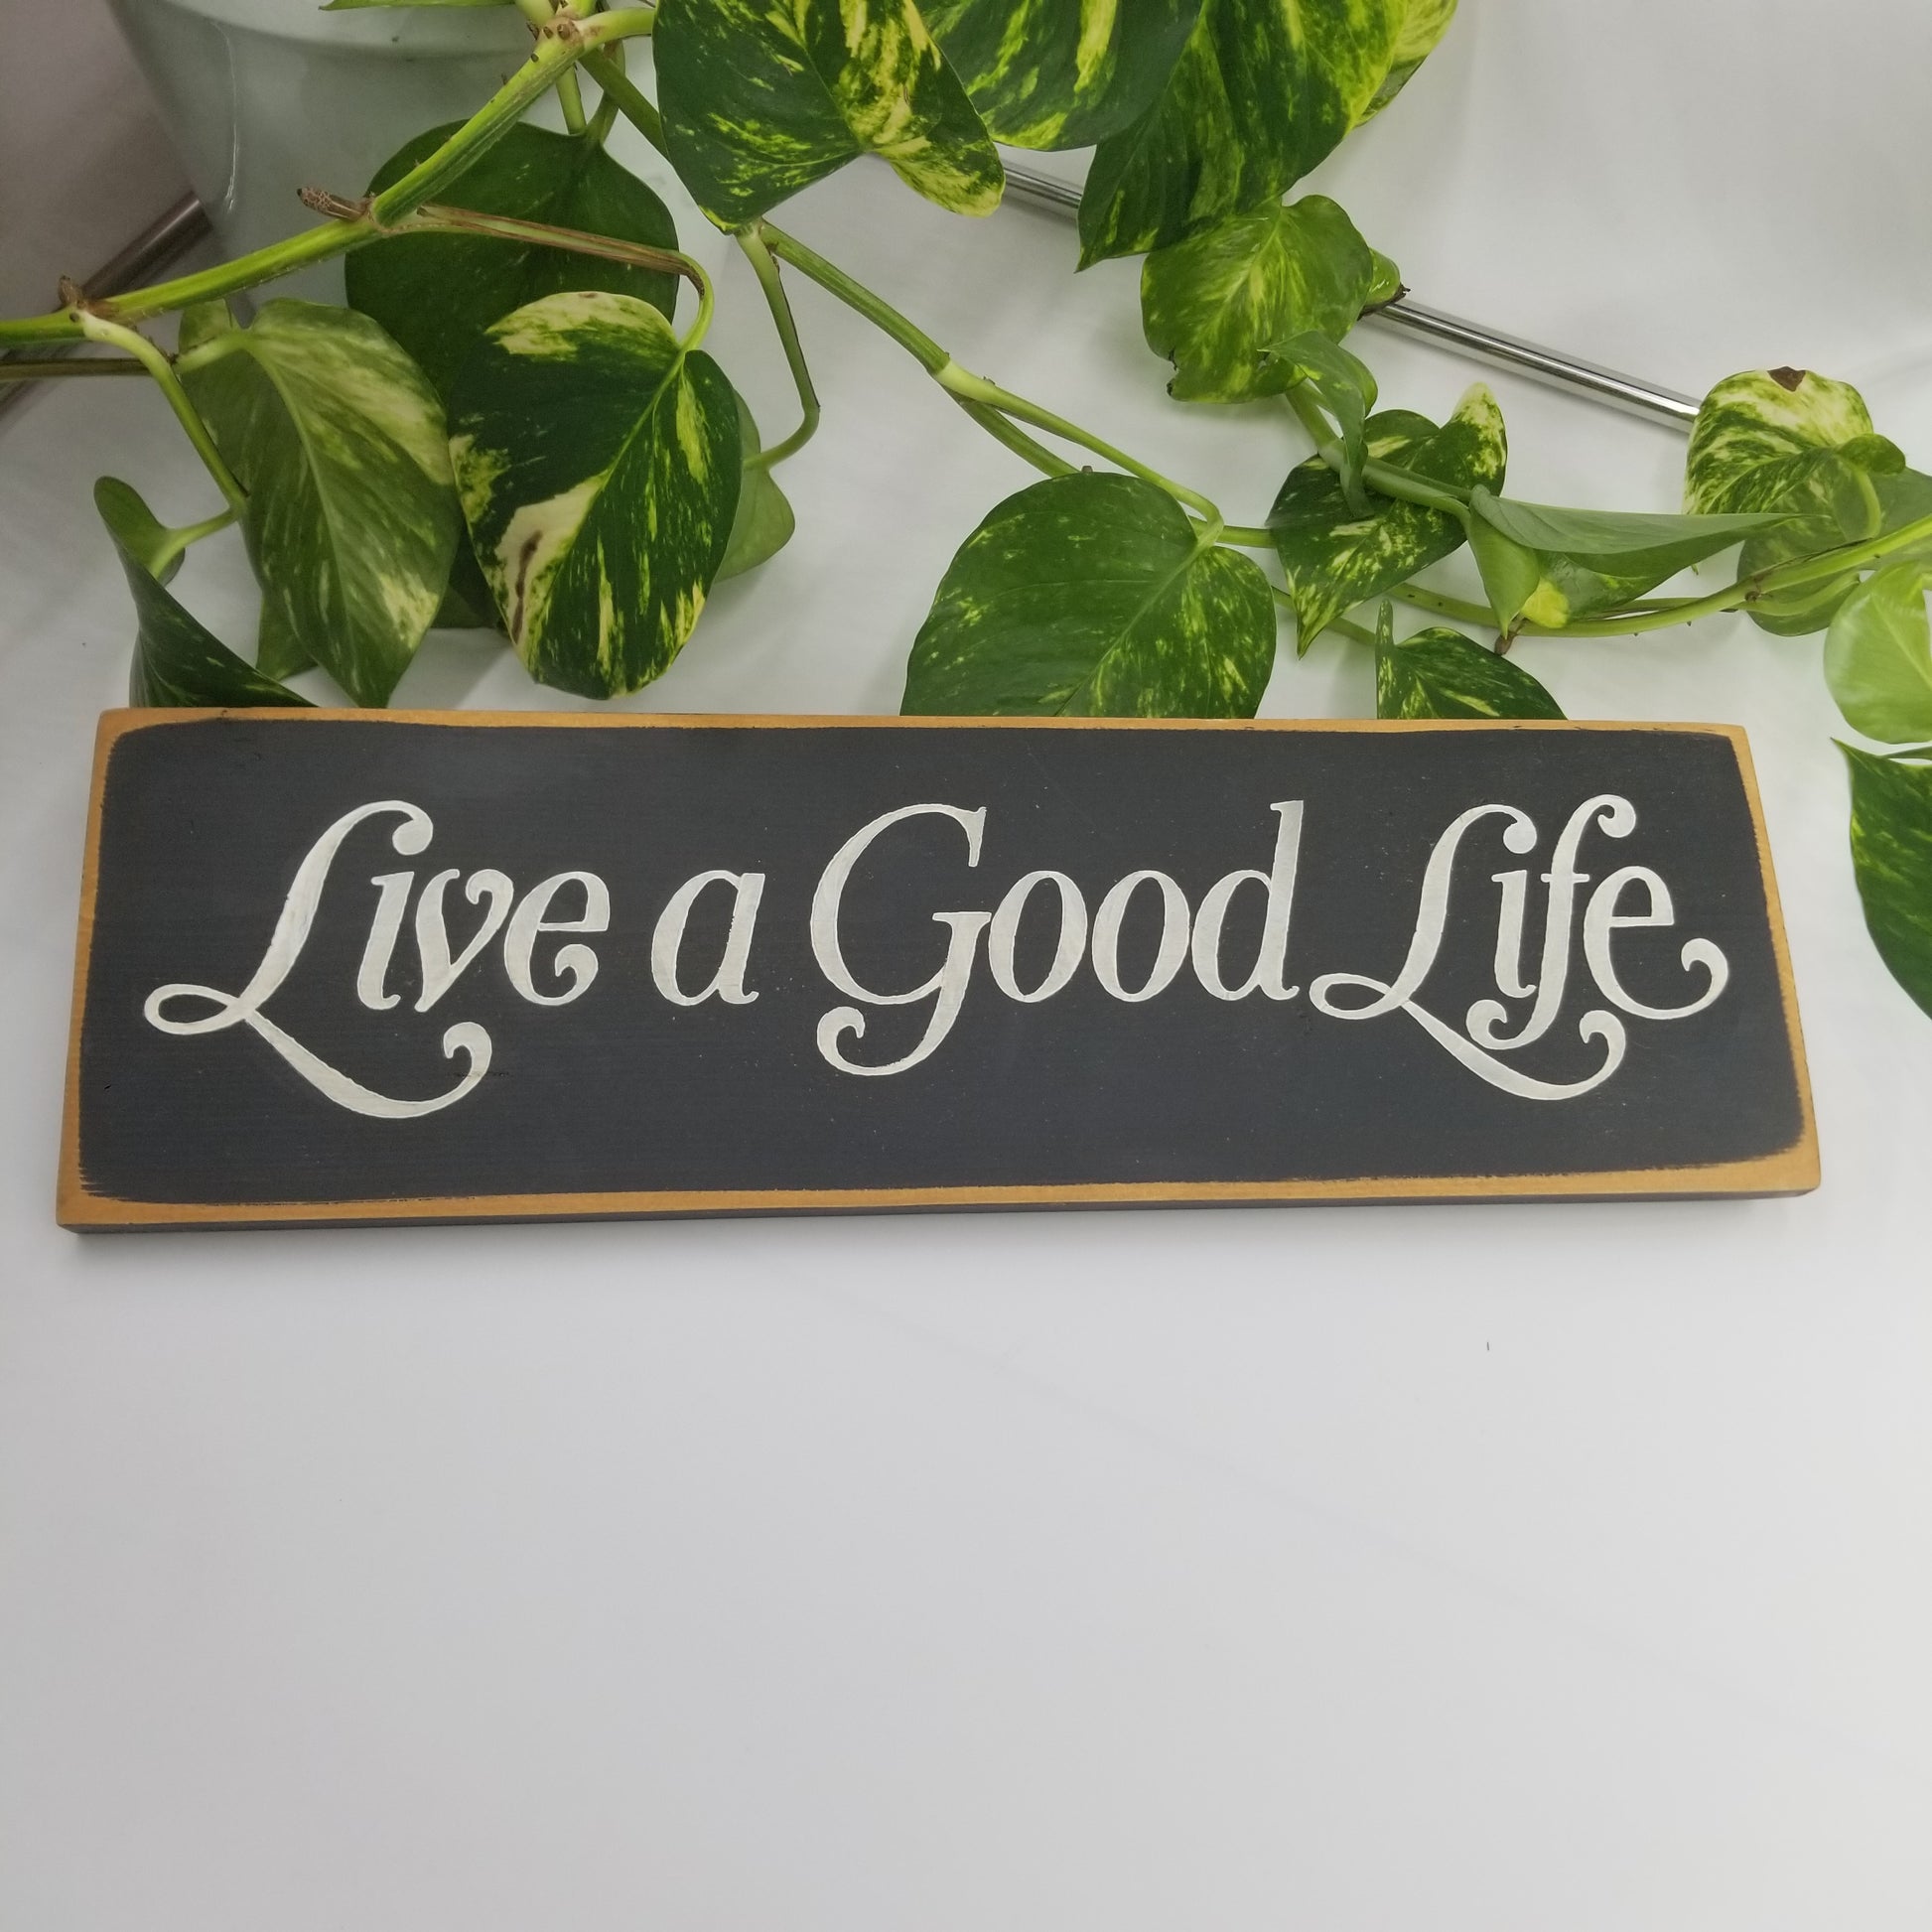 Live a good life